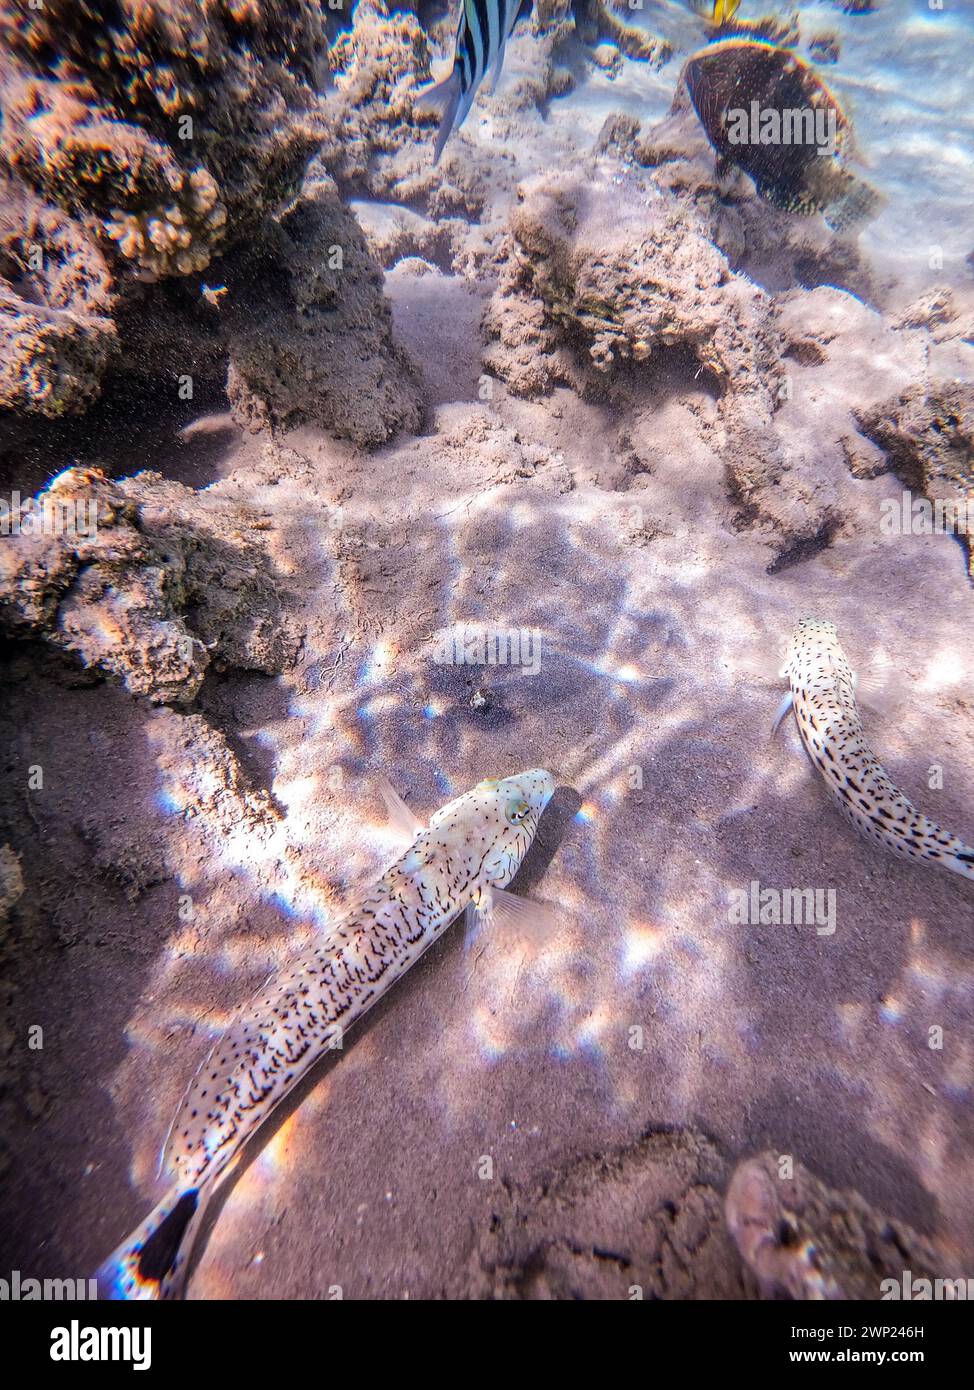 Vista ravvicinata del pesce di sandalo sott'acqua, conosciuto come Paraquercis hexophthalma, sott'acqua sulla sabbia della barriera corallina. Vita subacquea del reef con coralli An Foto Stock